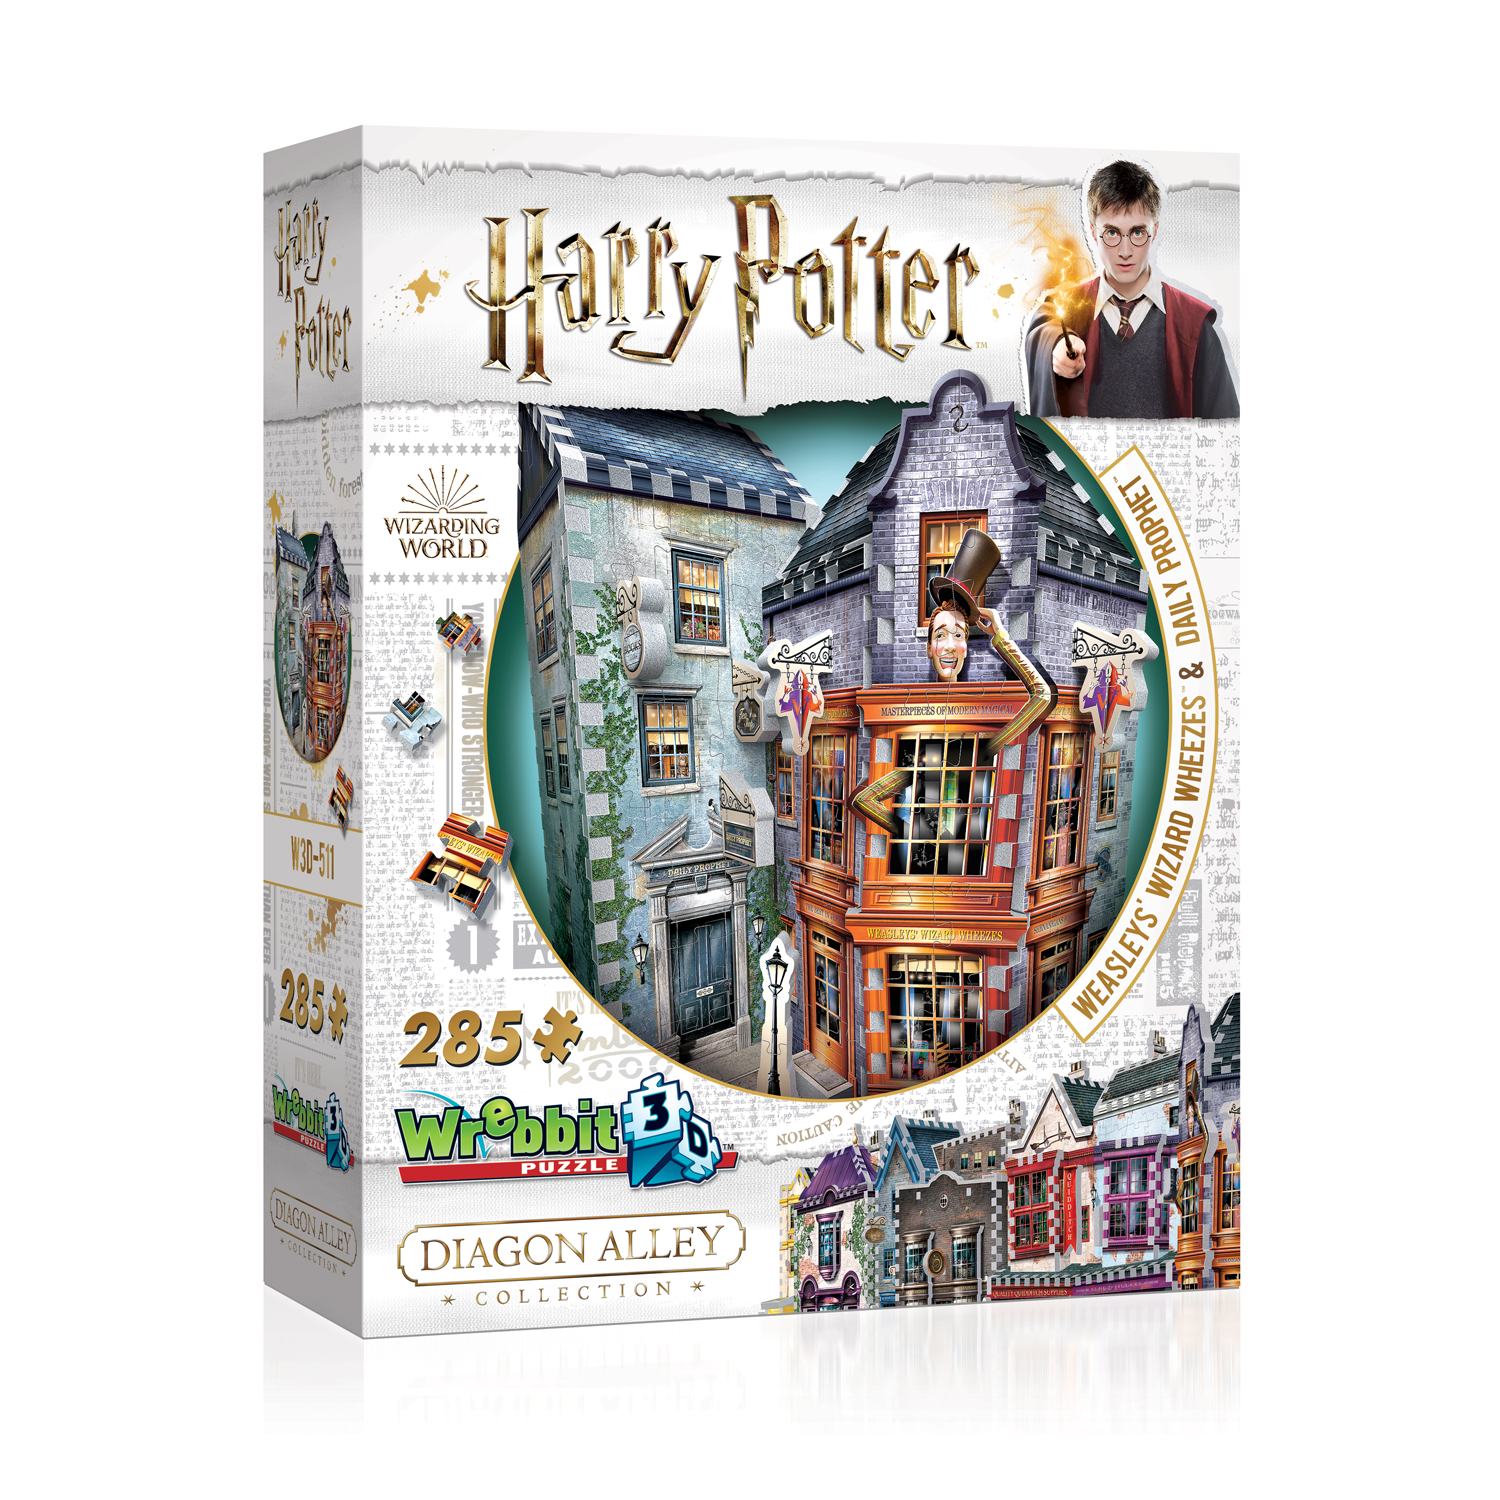 Harry Potter weaslys der Assistent Röcheln 3d Puzzle 